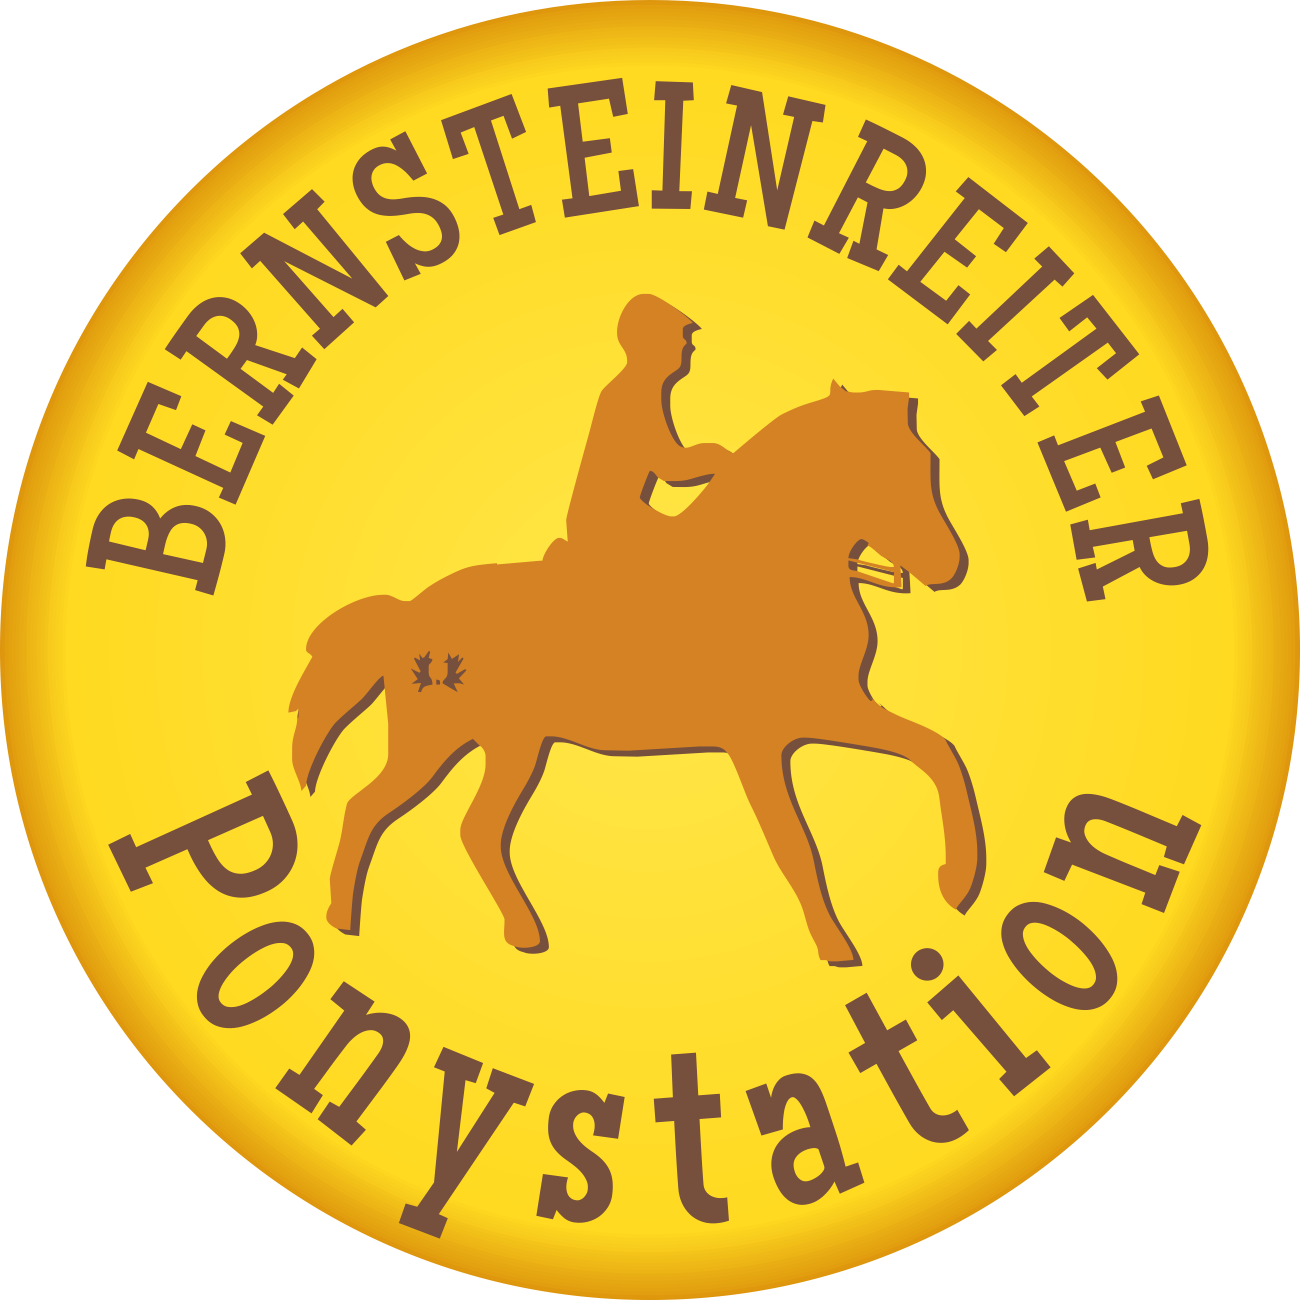 Bernsteinreiter Hirschburg GmbH